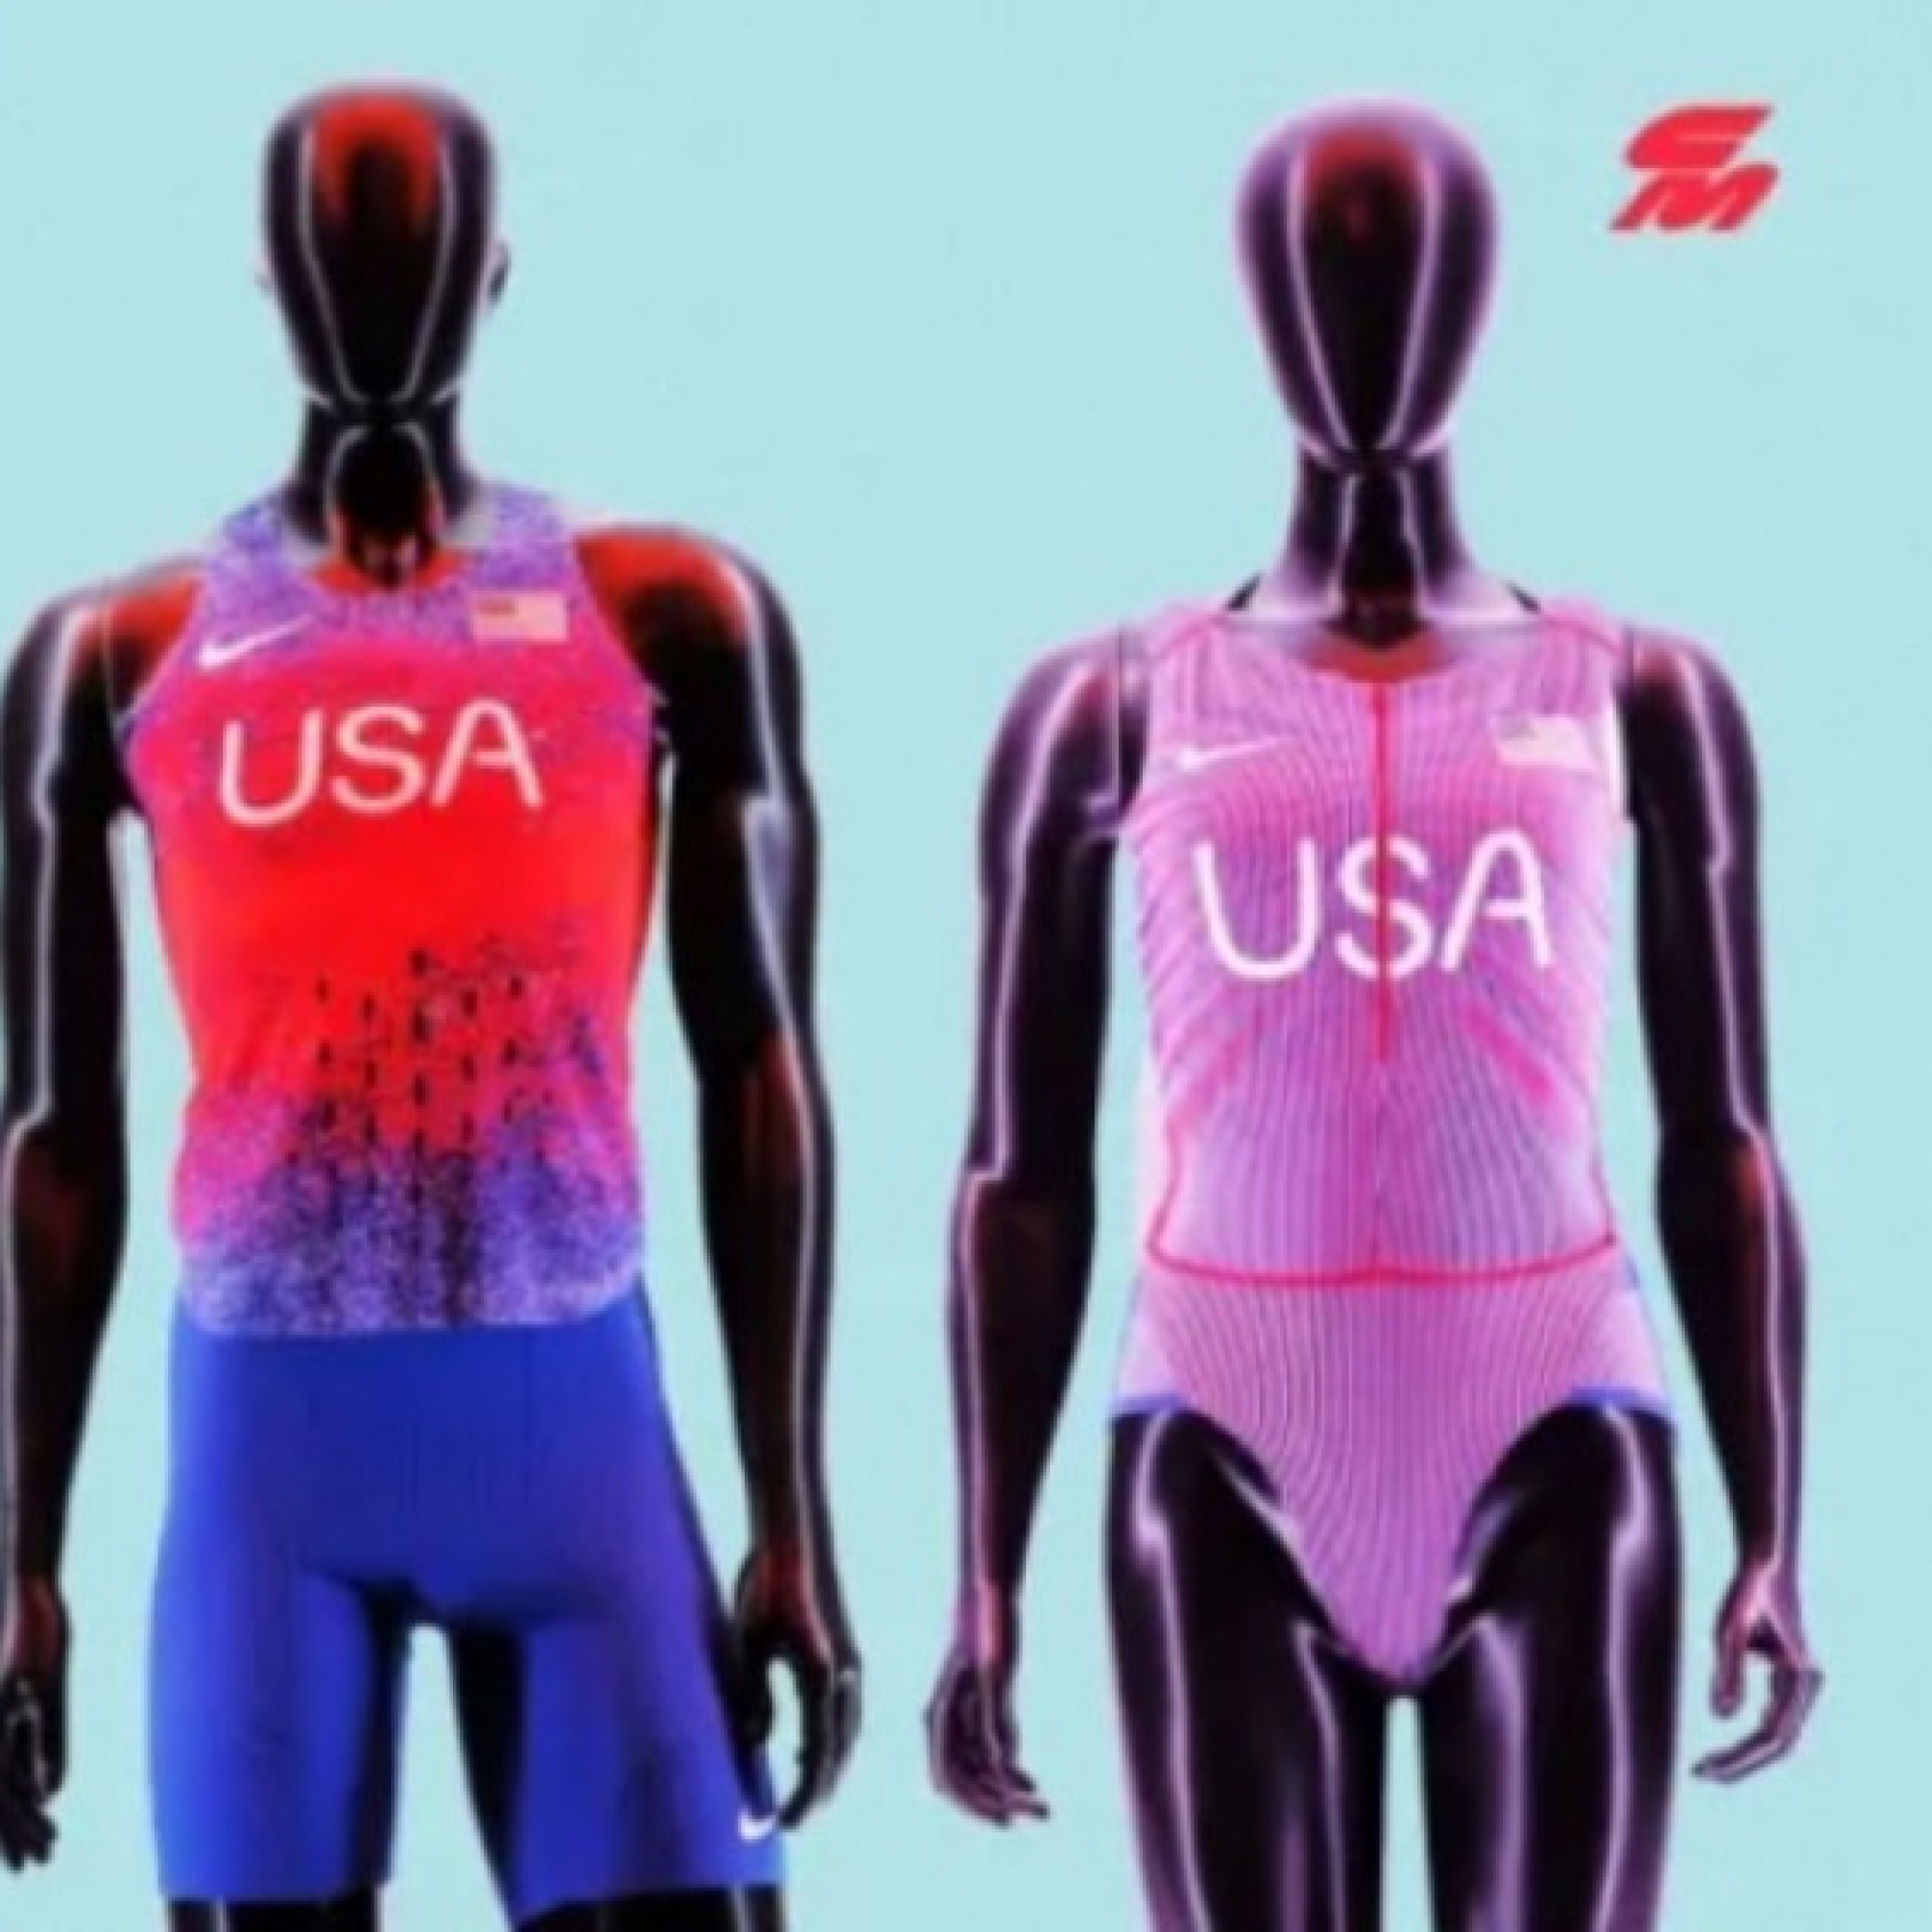  - Trang phục Olympic bị chê "nhạy cảm": VĐV nữ mặc vào như bikini